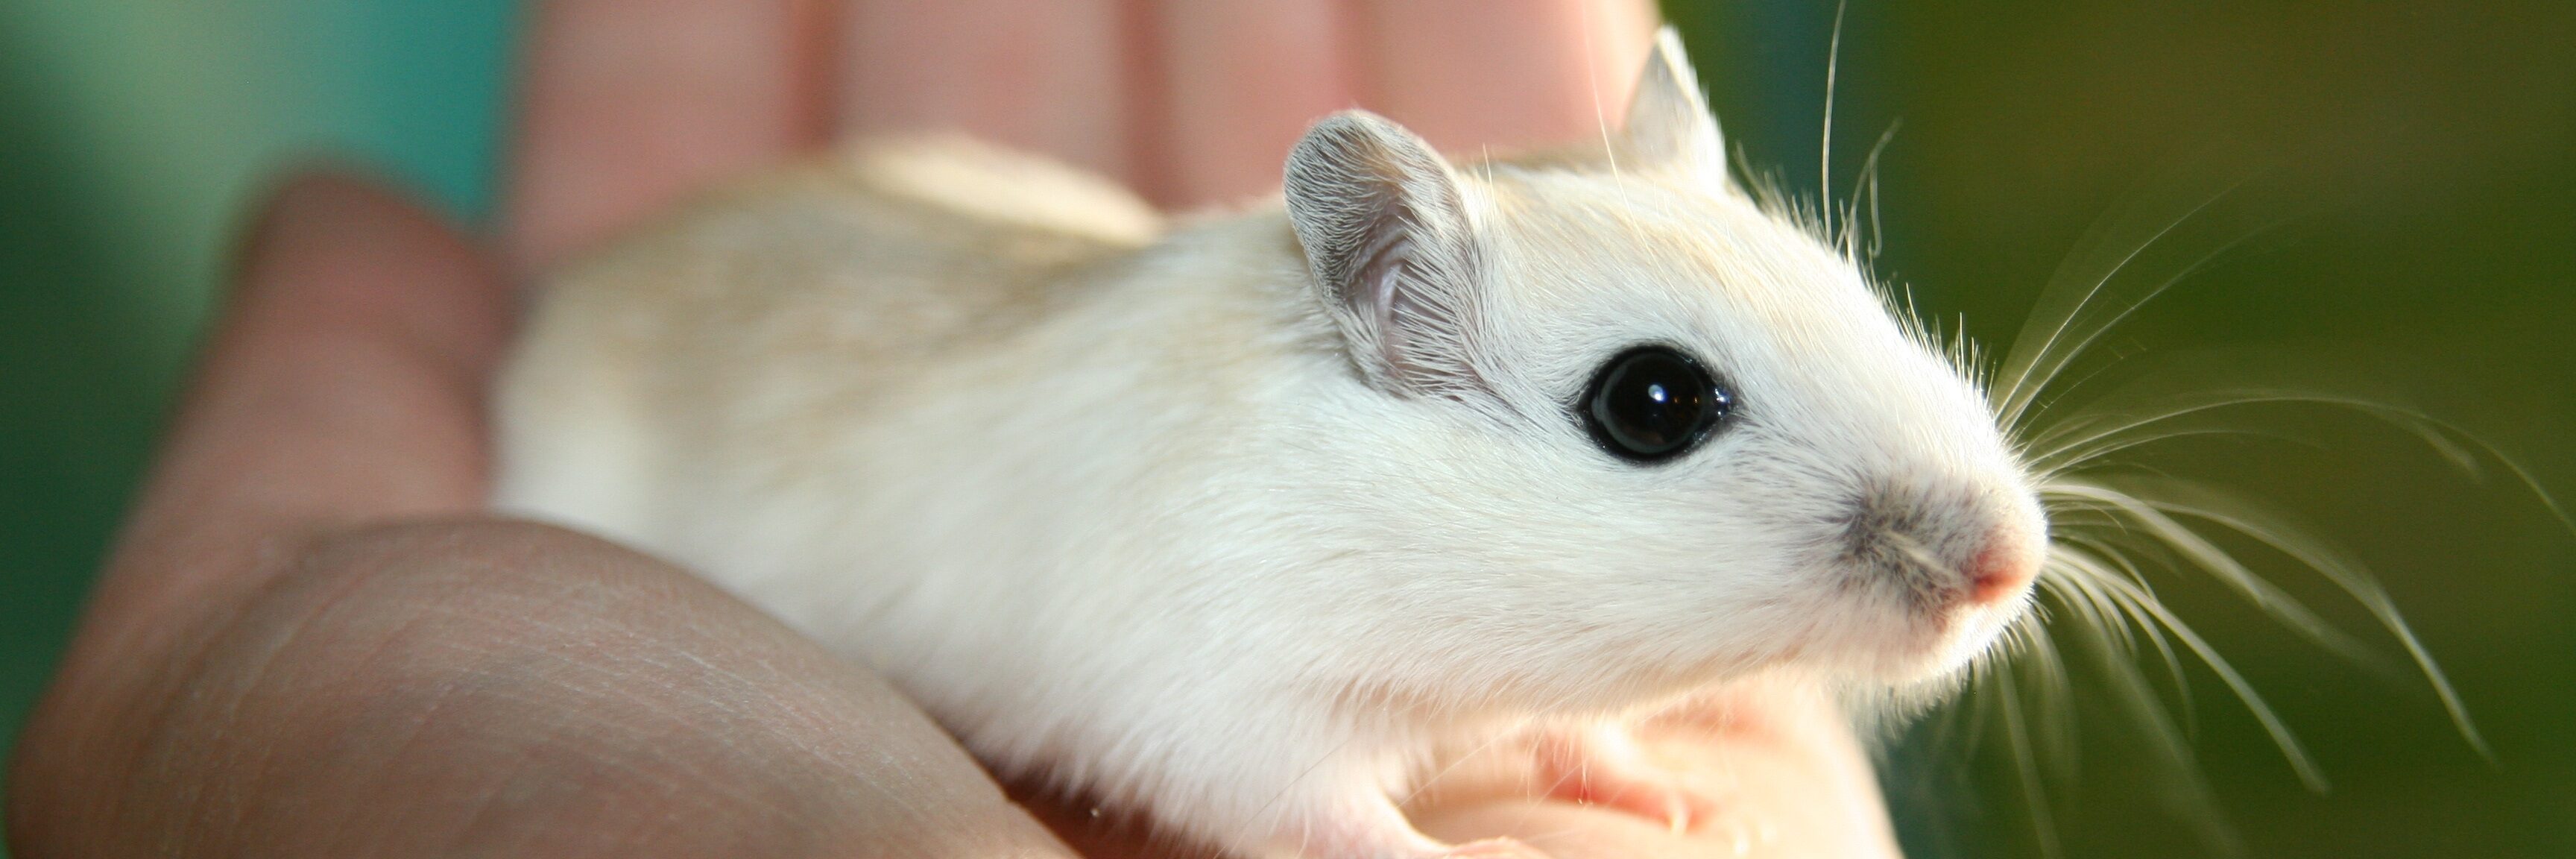 weiße Maus in einer menschlichen Hand